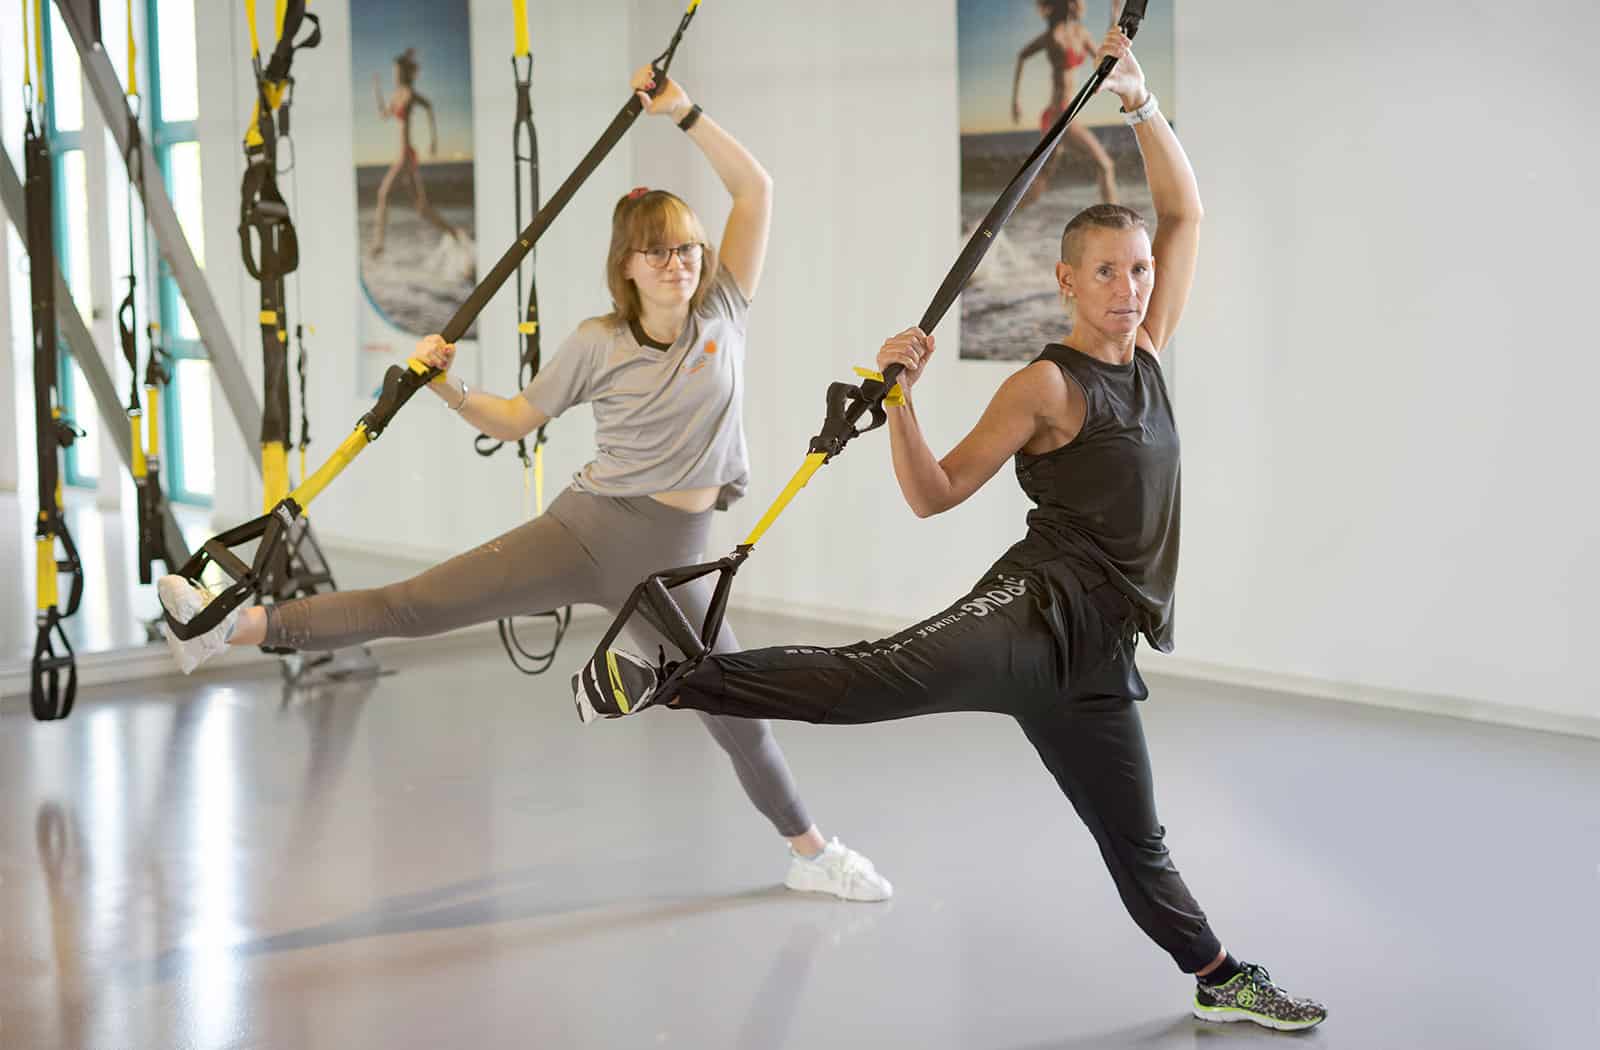 Die Schlingen des TRX Suspension Systems unterstützen den Sportler beim ausführen yogatypischer Posen. Ergänzt werden die gymnastischen Elemente durch kräftigende Übungen.